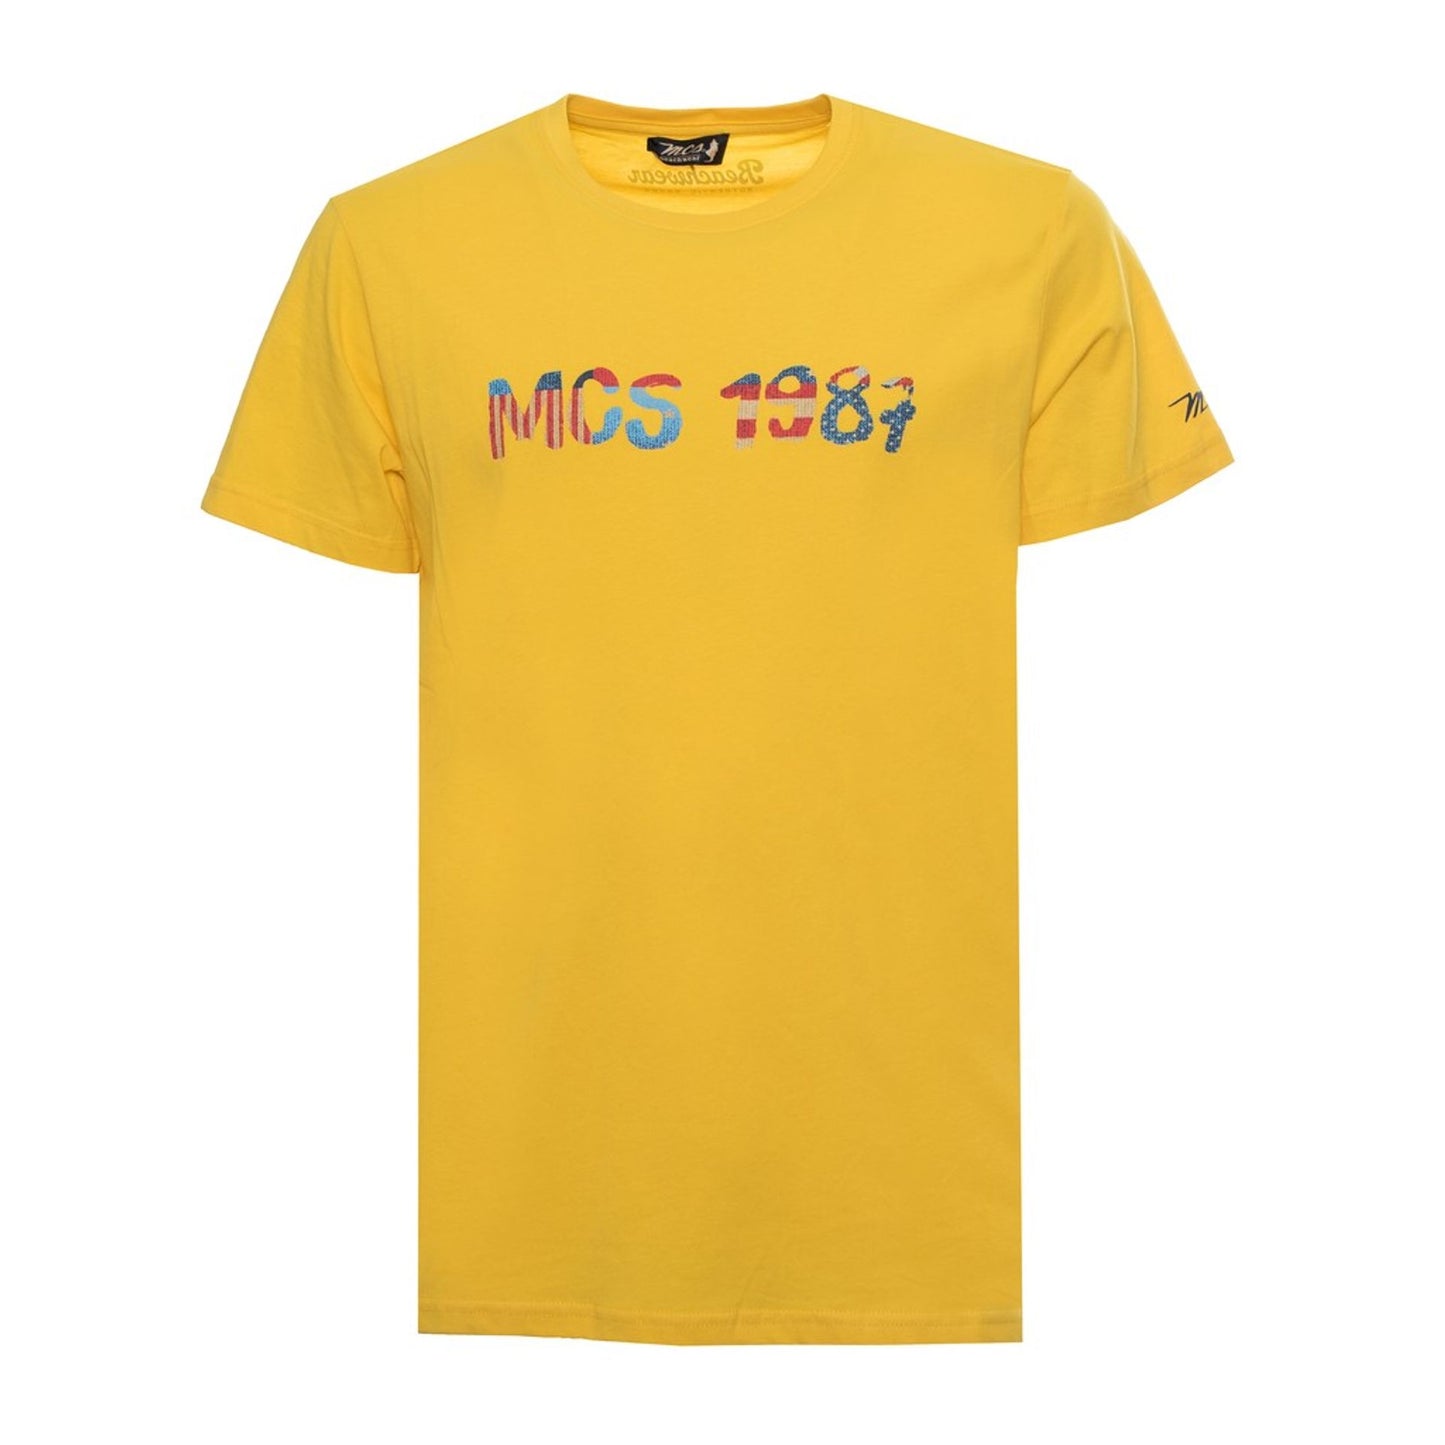 MCS T-Shirts